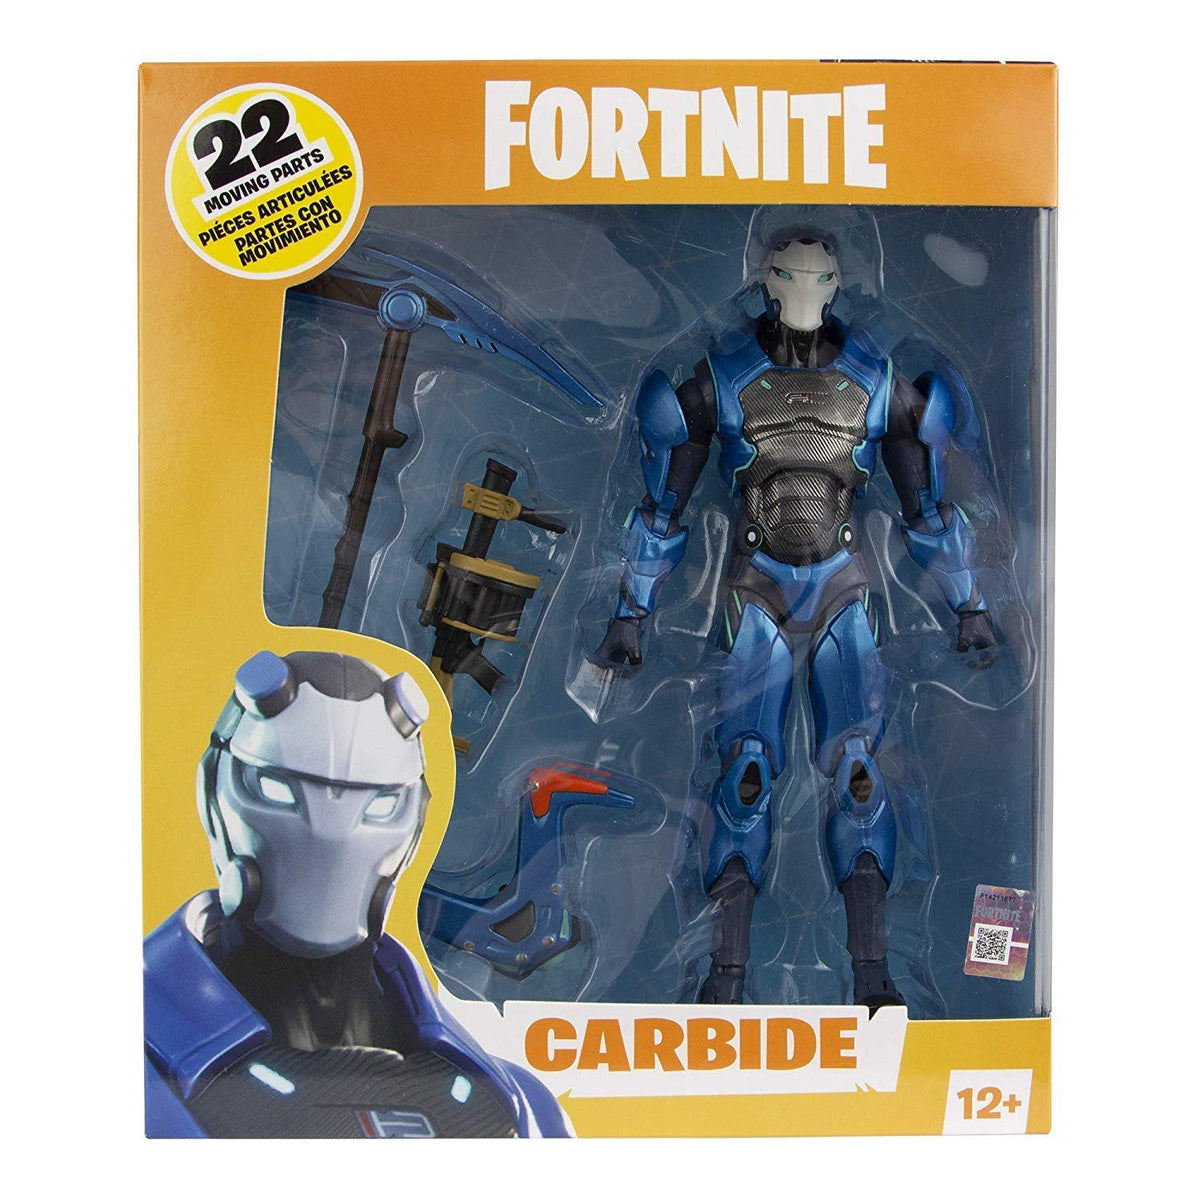 Fortnite - McFarlane Toys - Carbide - Figurine articulée 17cm